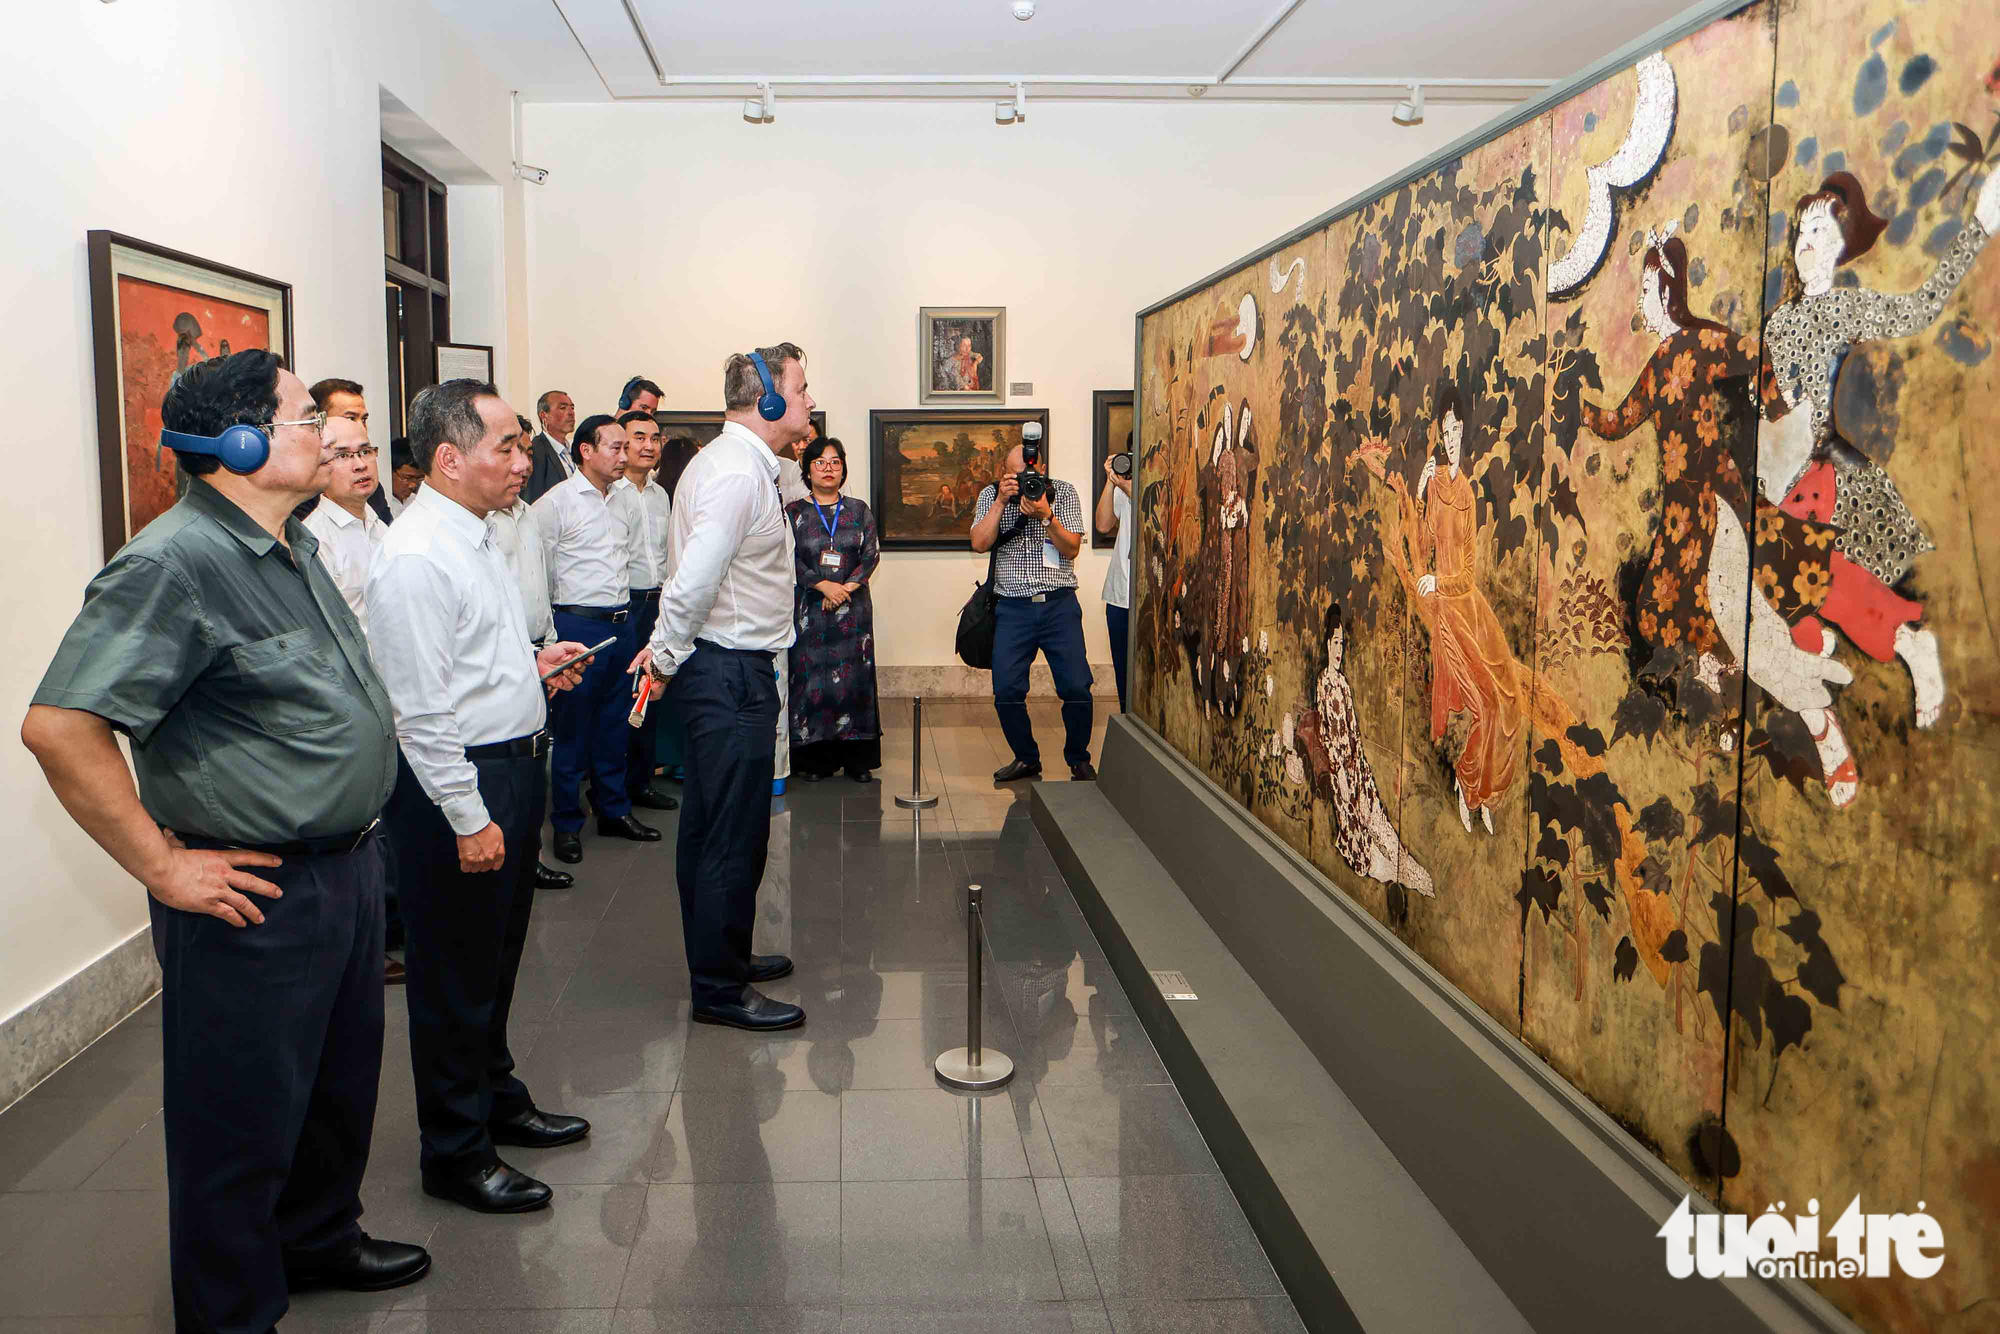 Hai thủ tướng chăm chú nhìn ngắm bức tranh sơn mài "Thiếu nữ trong vườn" của danh hoạ Nguyễn Gia Trí được trưng bày tại Bảo tàng Mỹ thuật Việt Nam - Ảnh: NGUYỄN KHÁNH